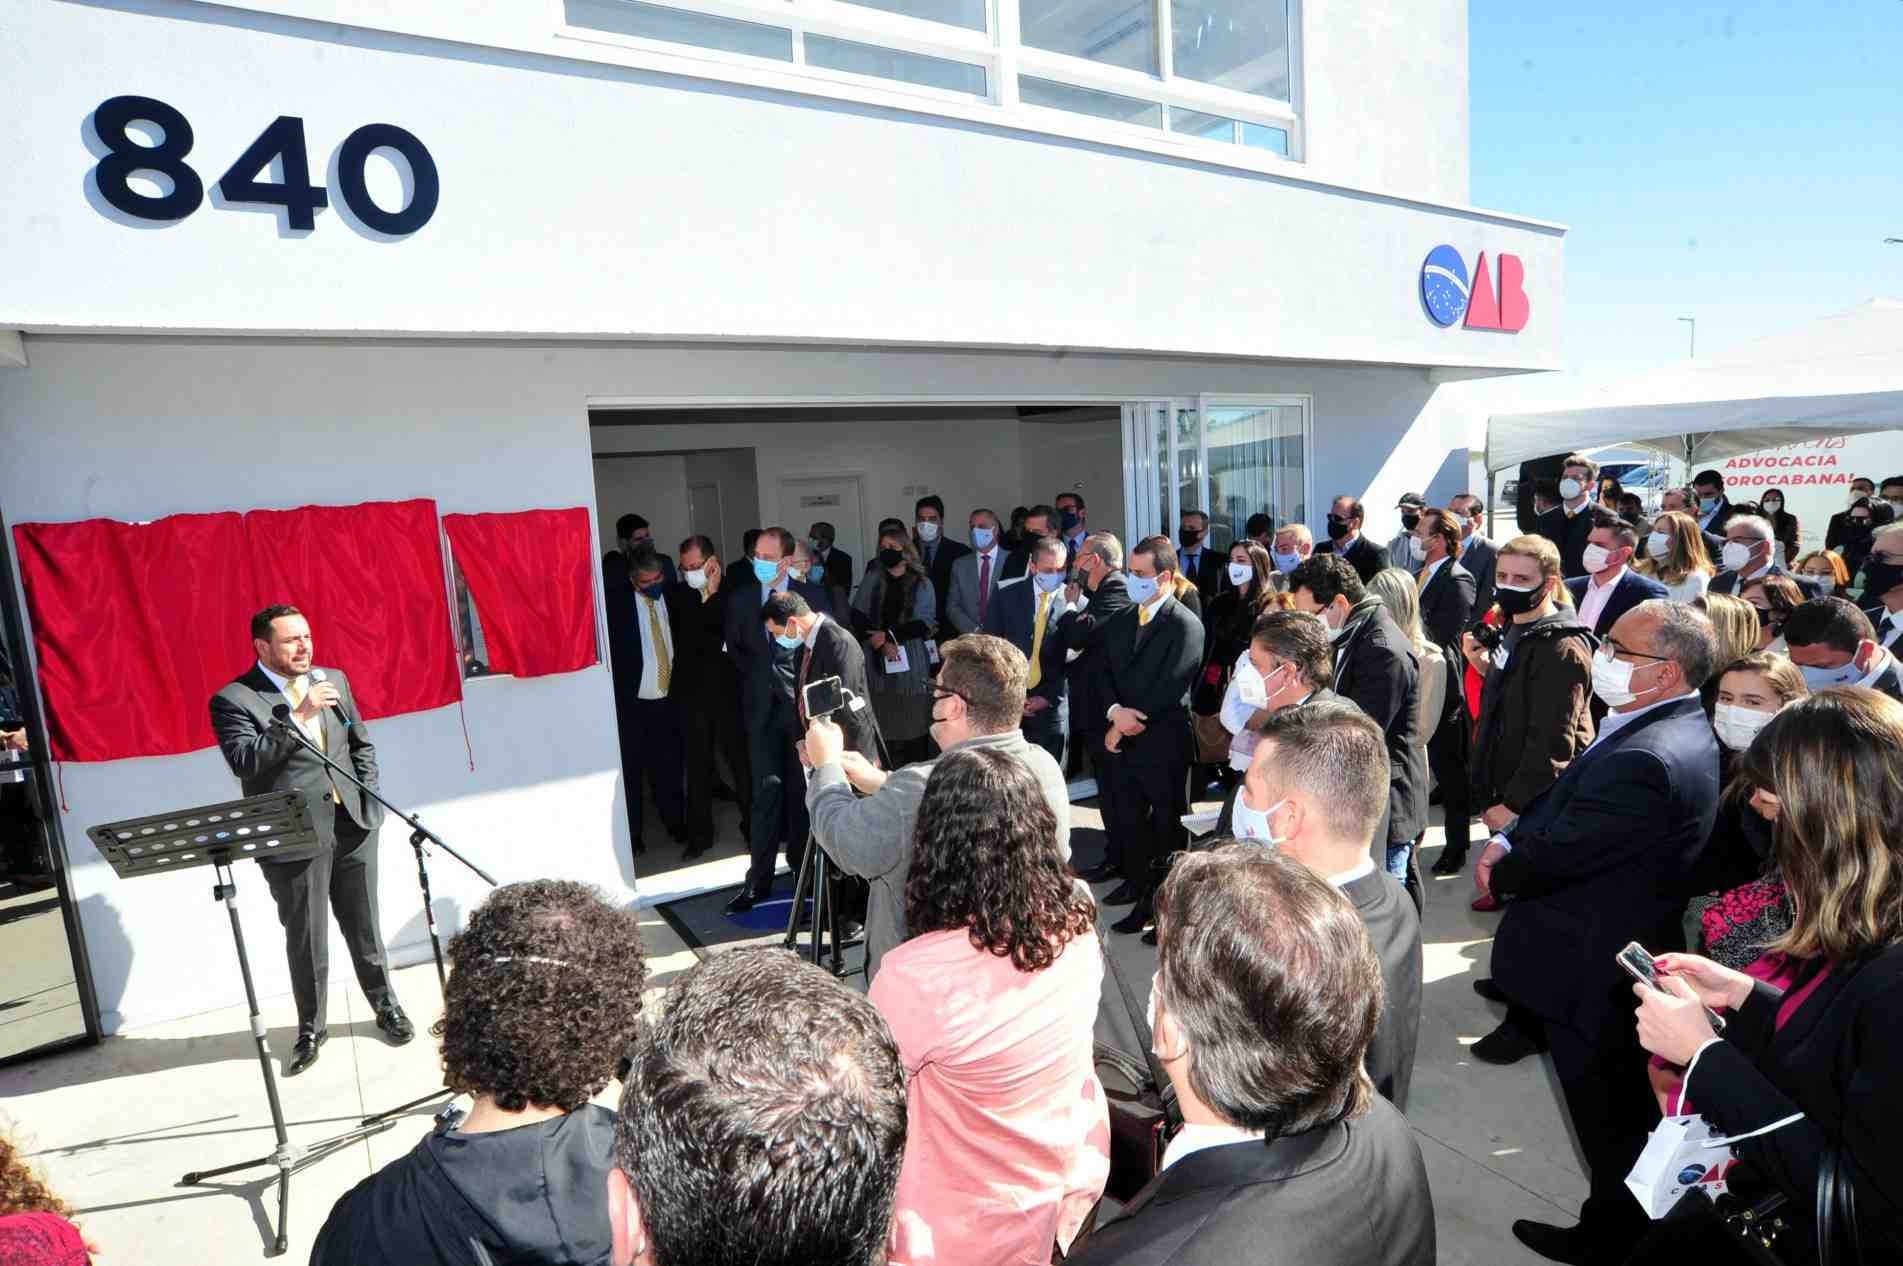 OAB Sorocaba inaugurou a nova sede ontem pela manhã na rua 28 de Outubro.